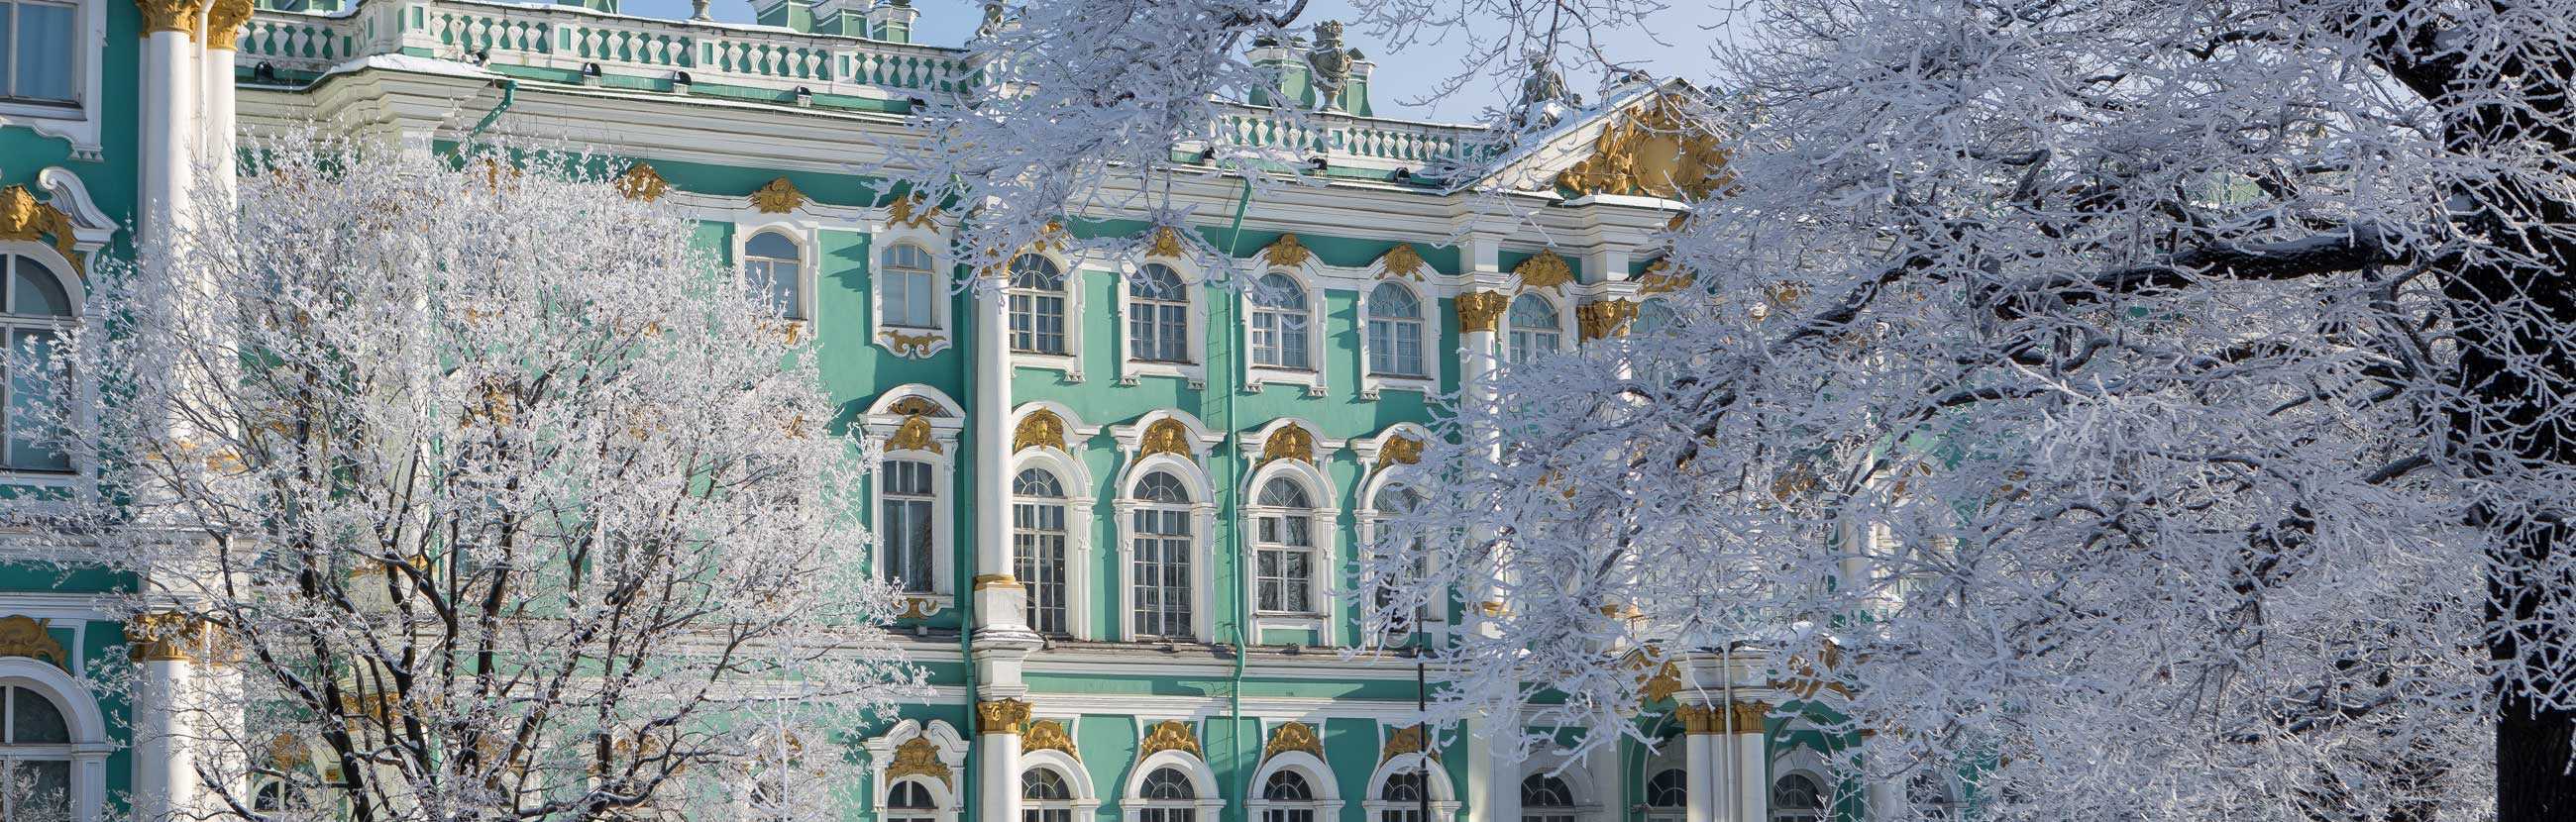 Санкт-петербург (россия) - всё о городе, достопримечательности, фото санкт-петербурга